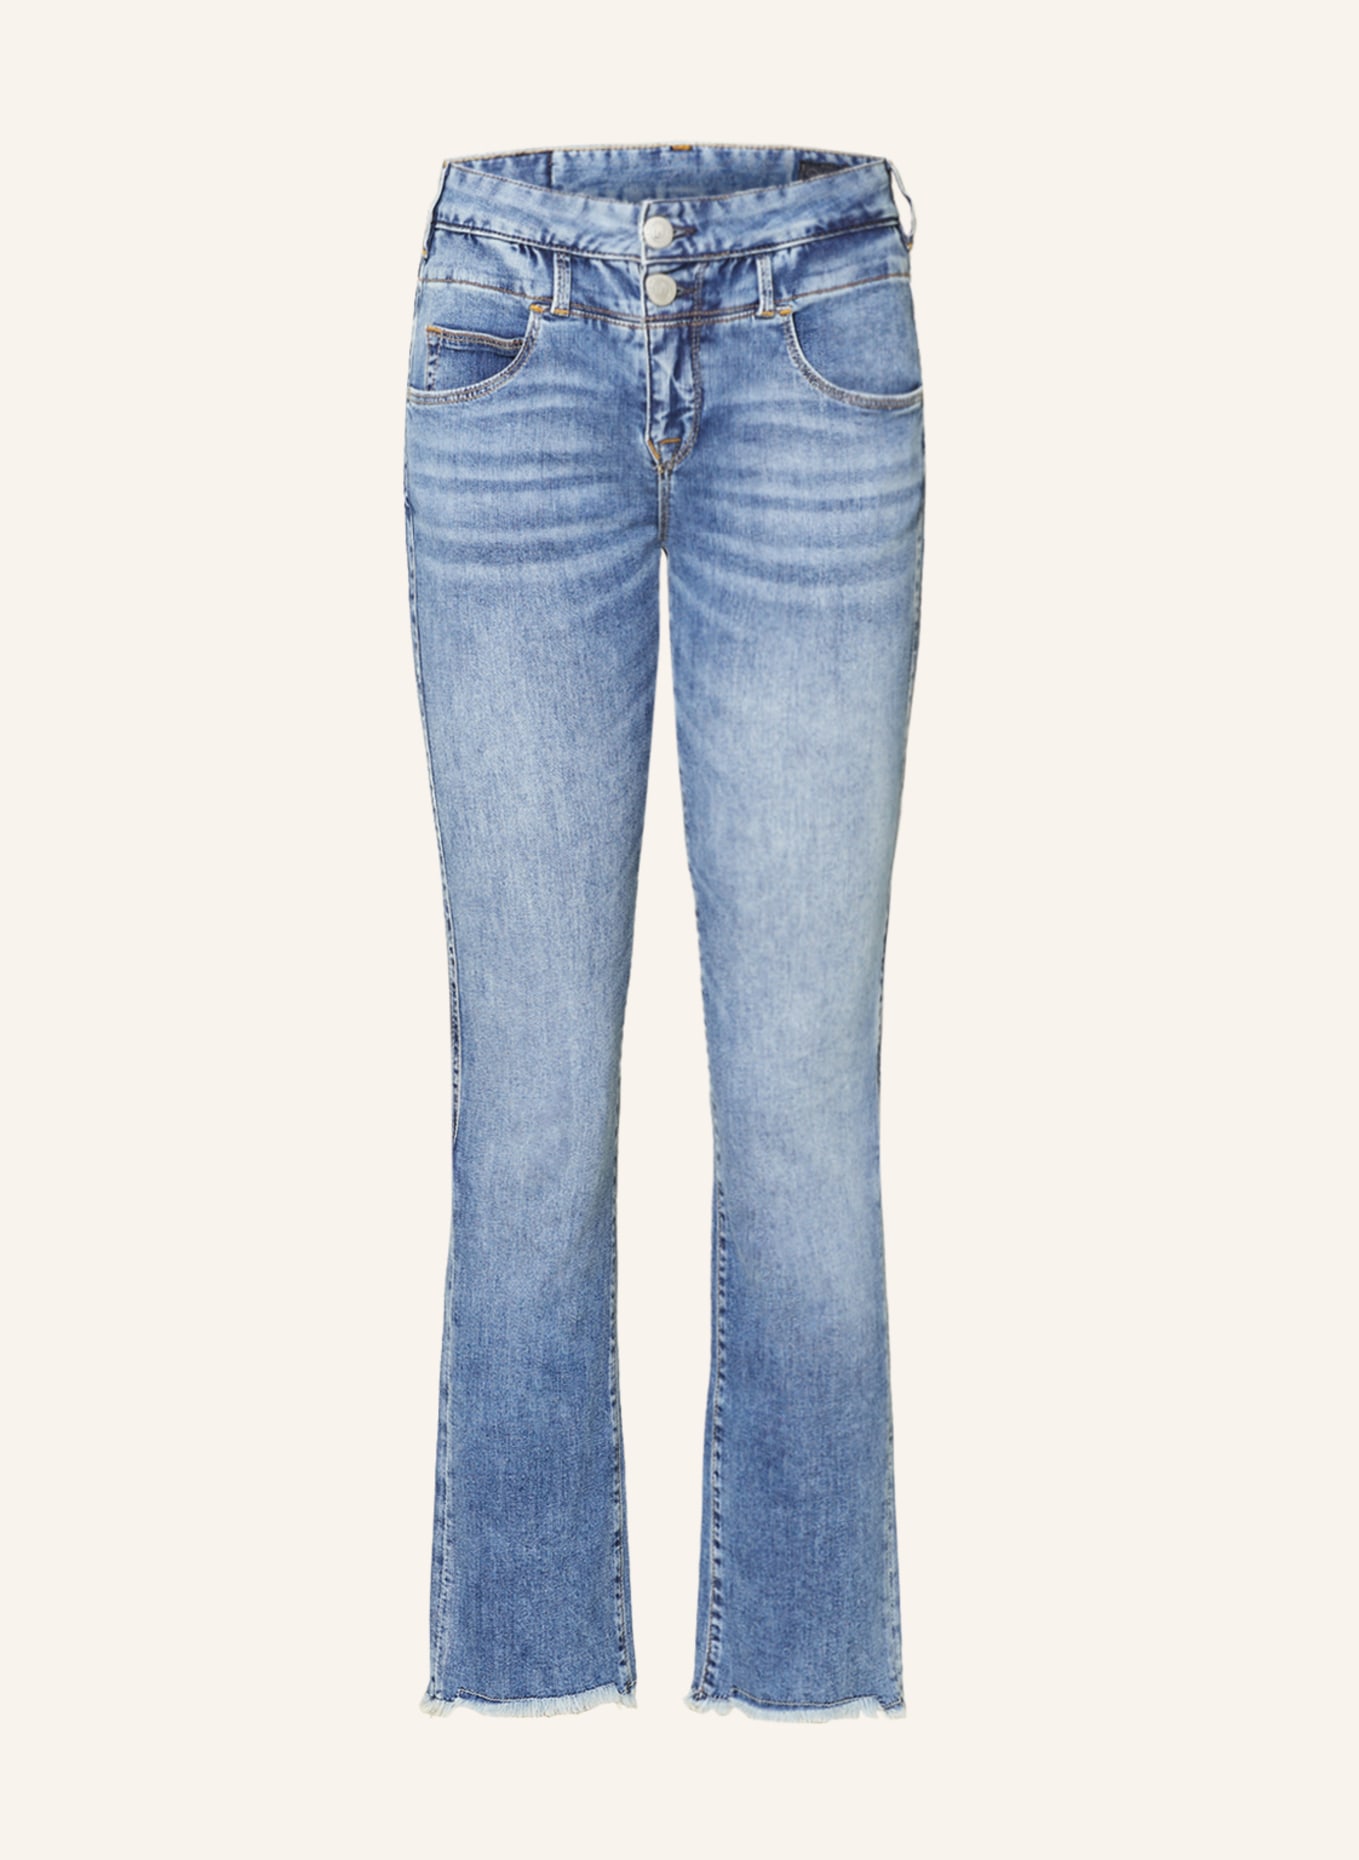 Herrlicher Flared Jeans BABY, Farbe: 946 carolina blue (Bild 1)